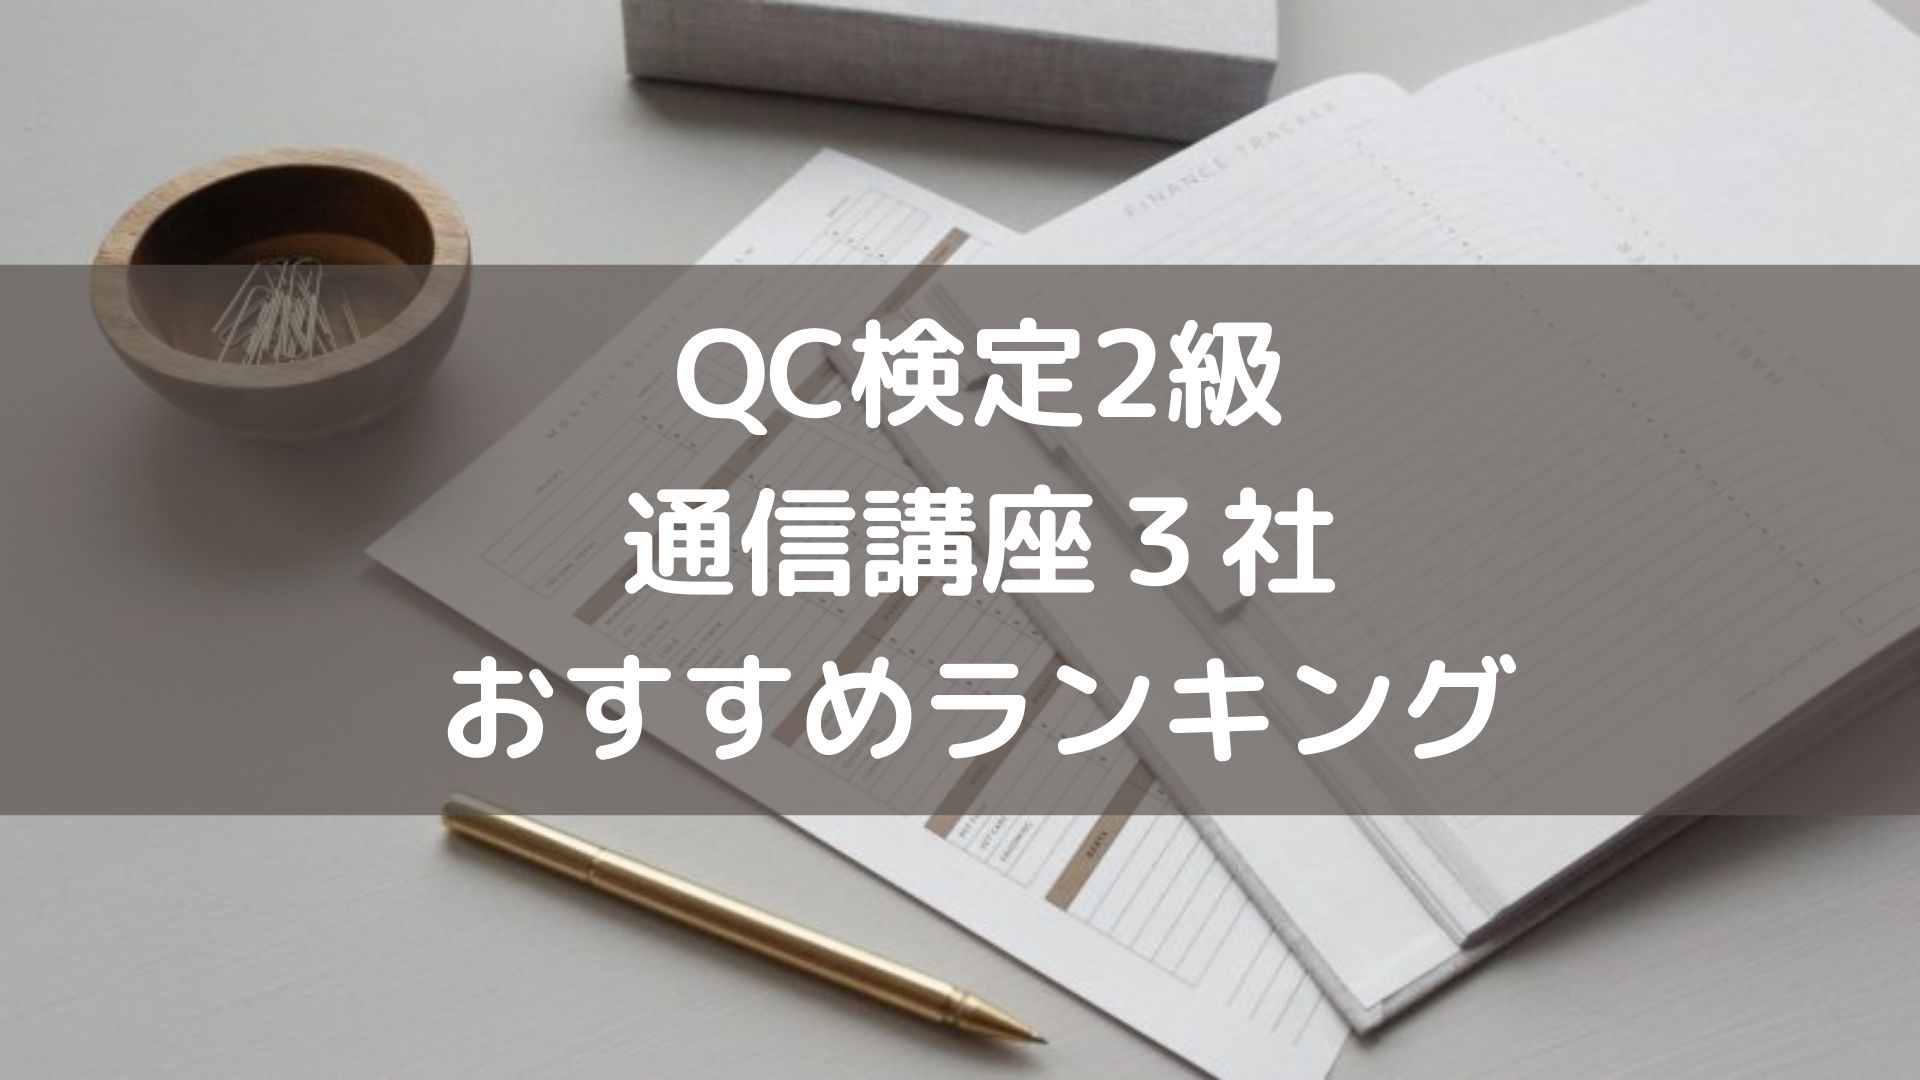 【QC検定2級】通信講座３社おすすめランキング